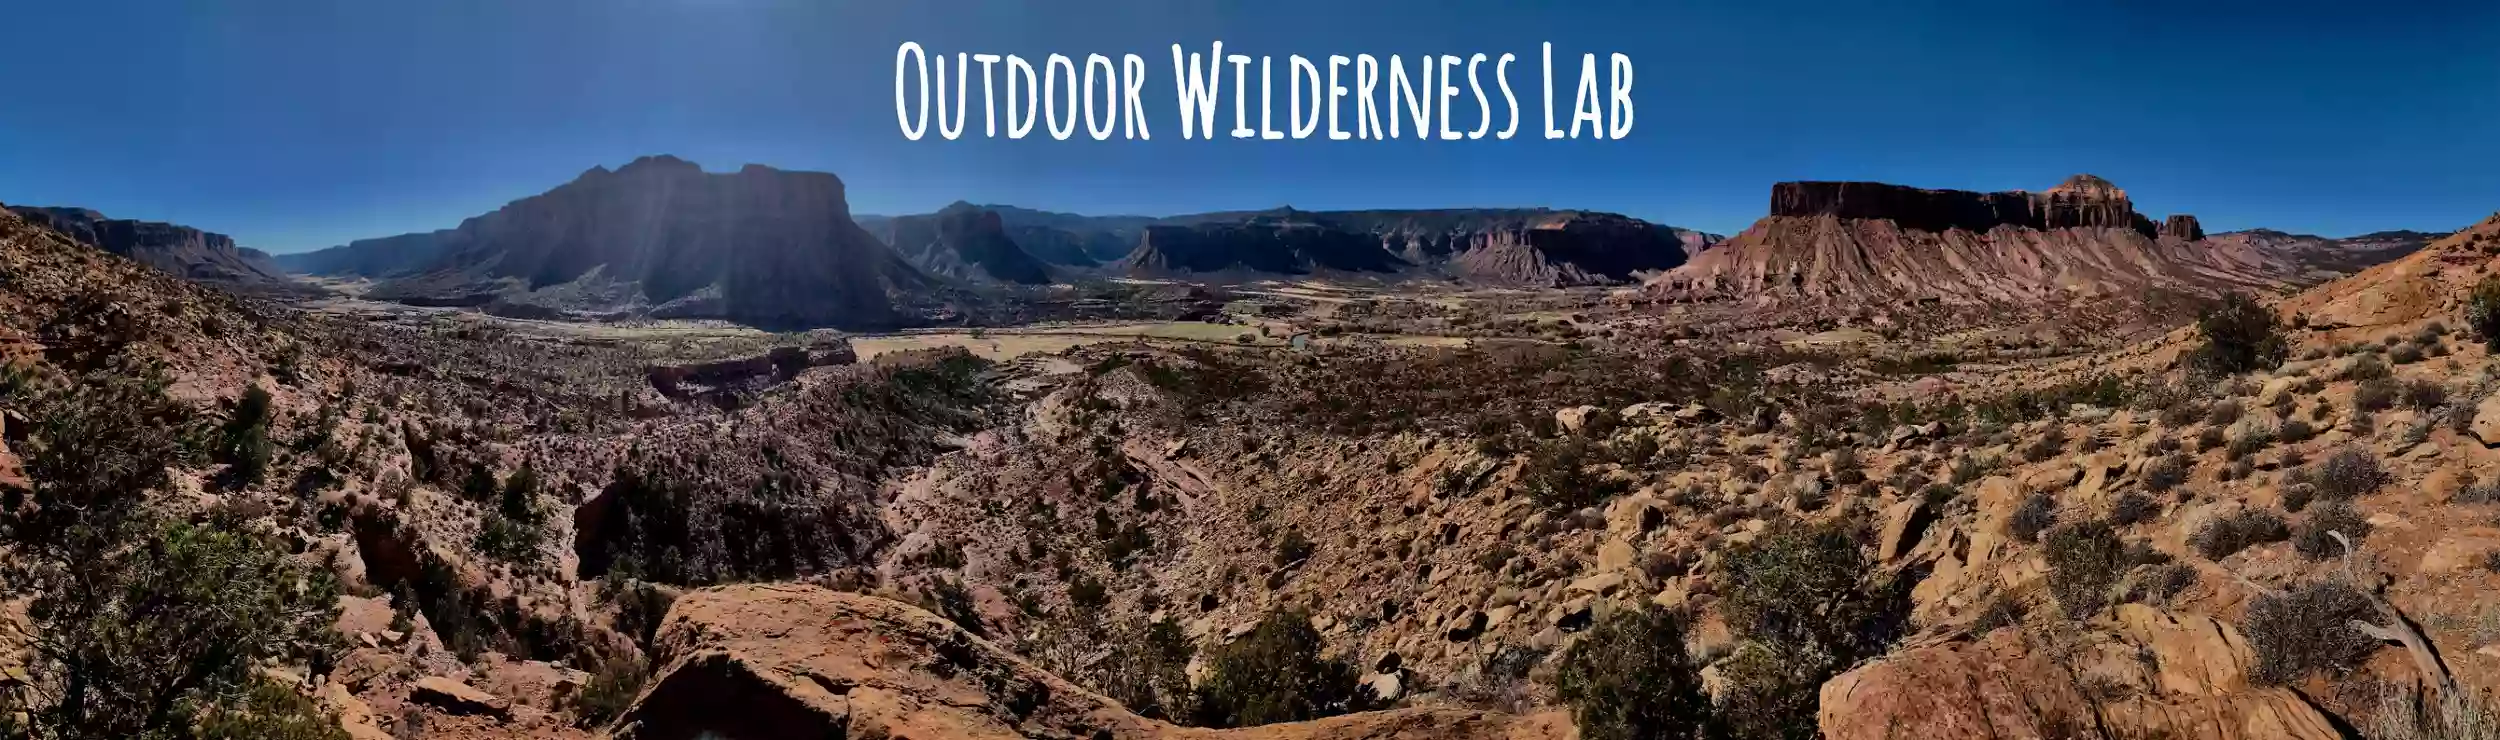 Outdoor Wilderness Lab